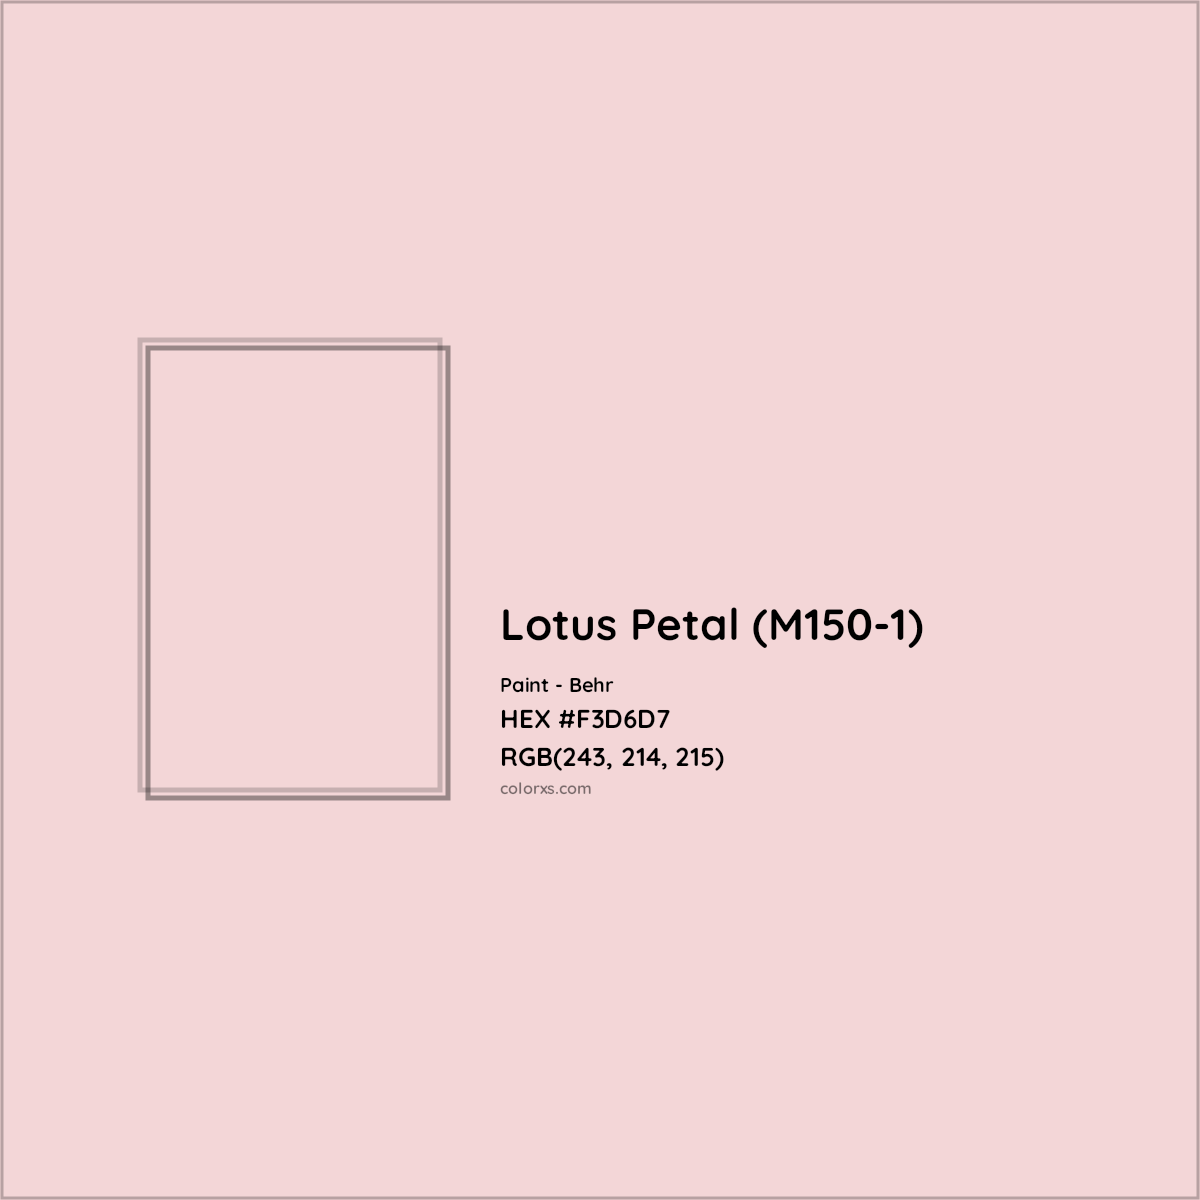 HEX #F3D6D7 Lotus Petal (M150-1) Paint Behr - Color Code